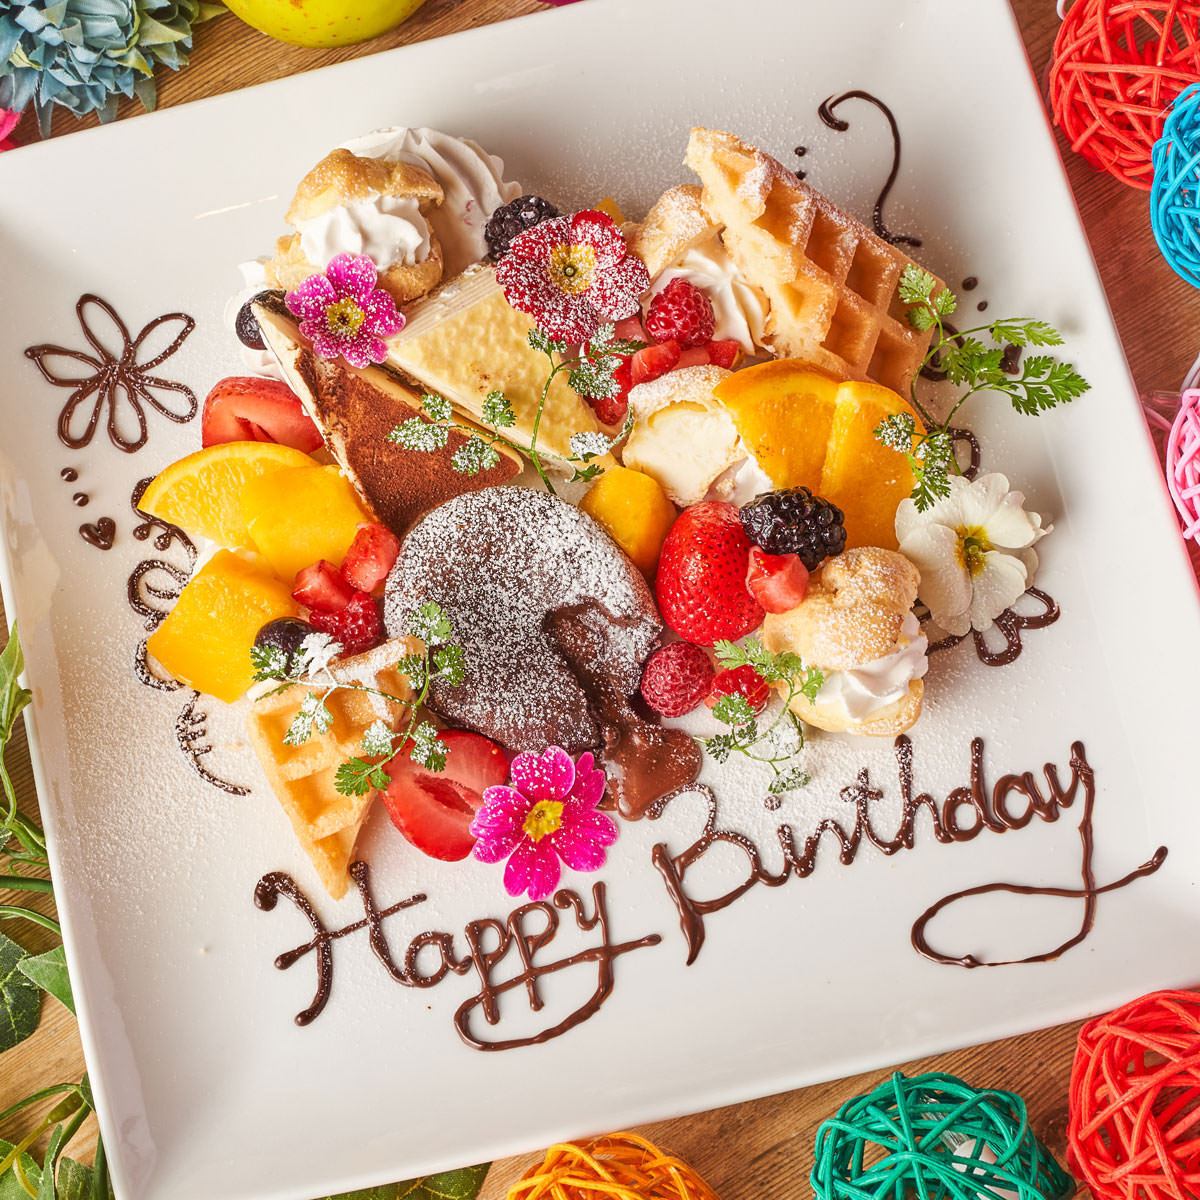 我們提供非常適合慶祝生日和週年紀念日的甜點盤。